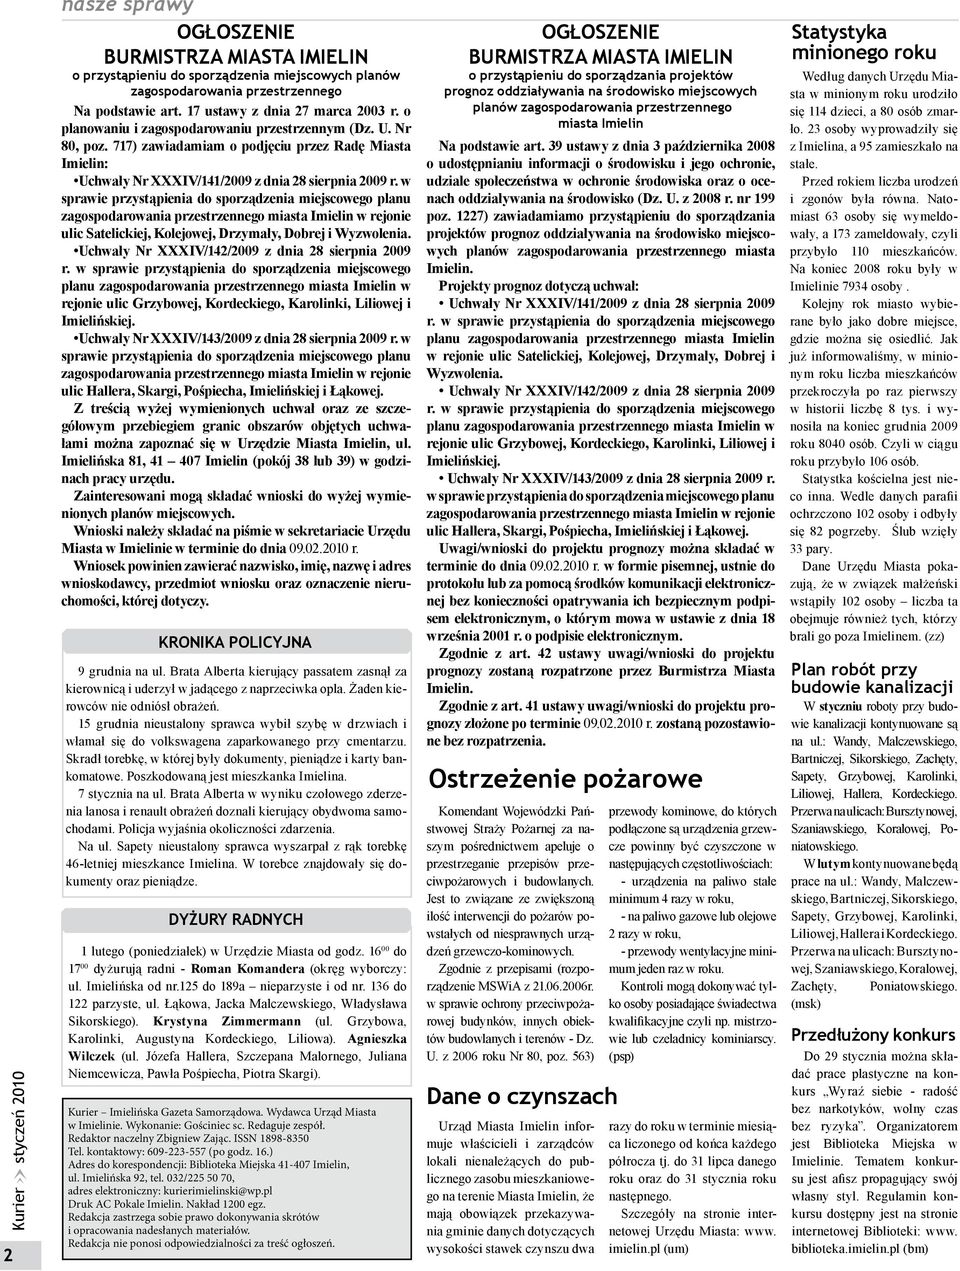 w sprawie przystąpienia do sporządzenia miejscowego planu zagospodarowania przestrzennego miasta Imielin w rejonie ulic Satelickiej, Kolejowej, Drzymały, Dobrej i Wyzwolenia.